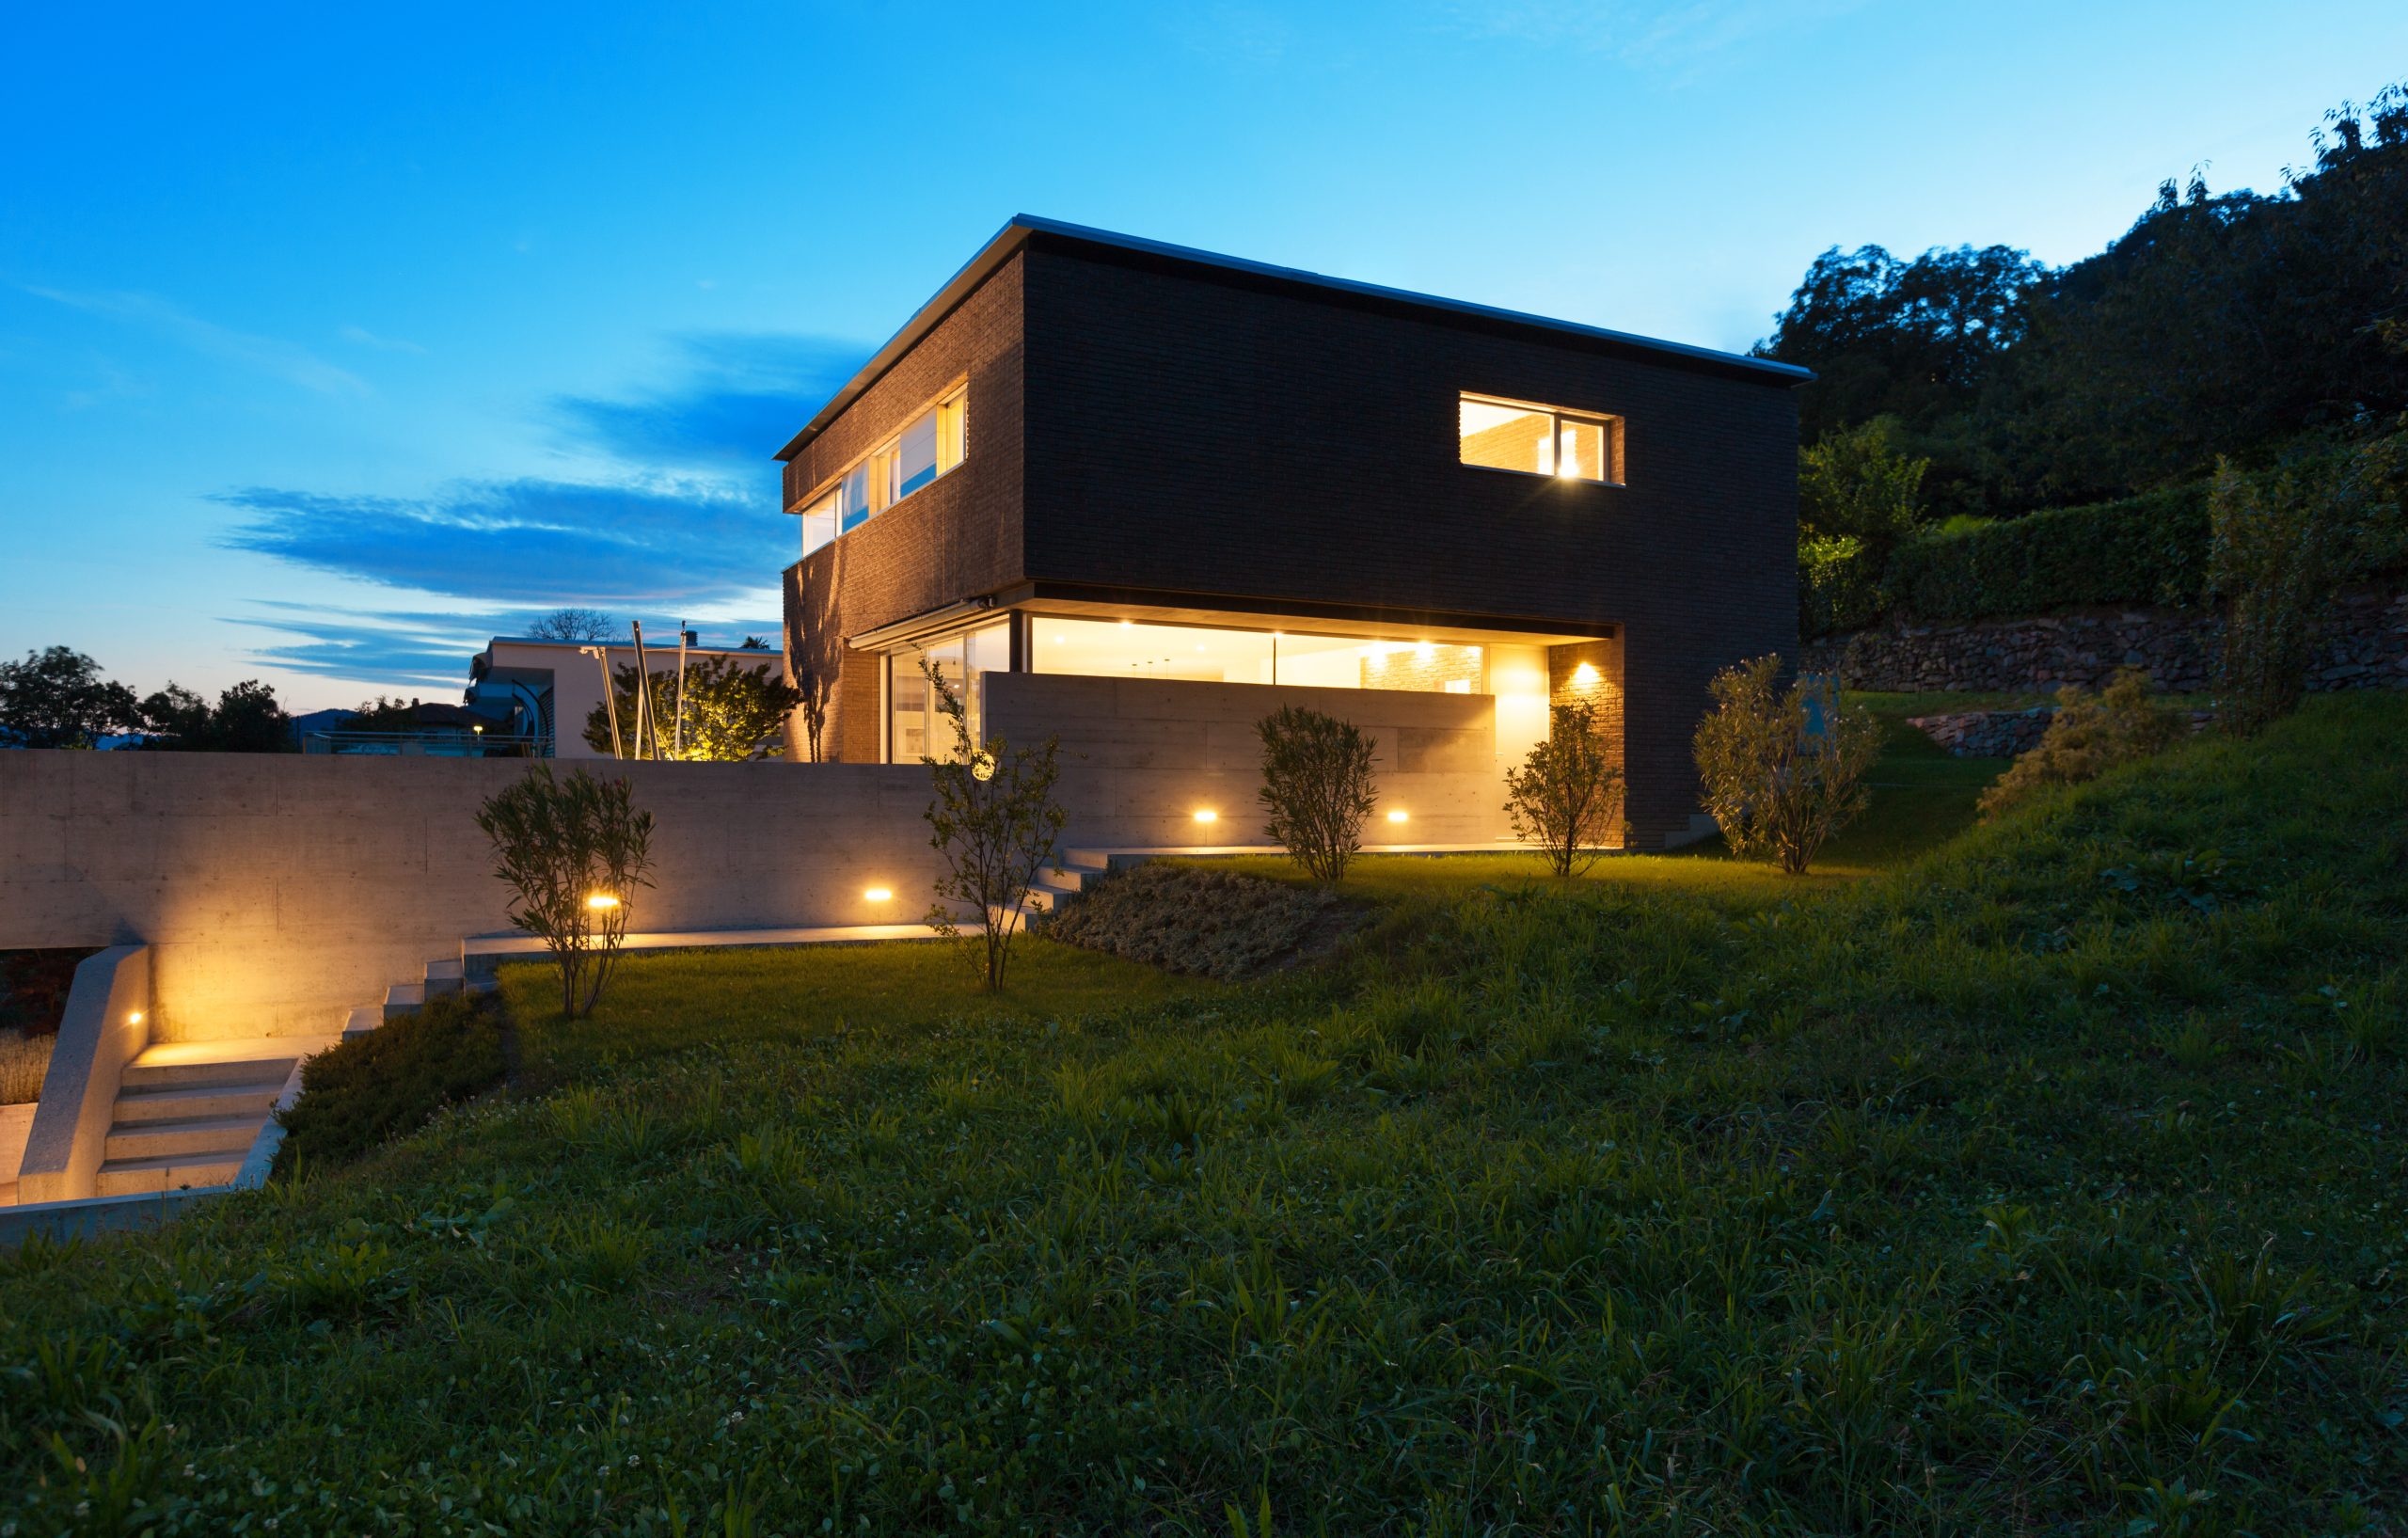 Foto de uma casa construída em um terreno em declive, para ilustrar o texto do blog da Soma Urbanismo sobre lotes em aclive.